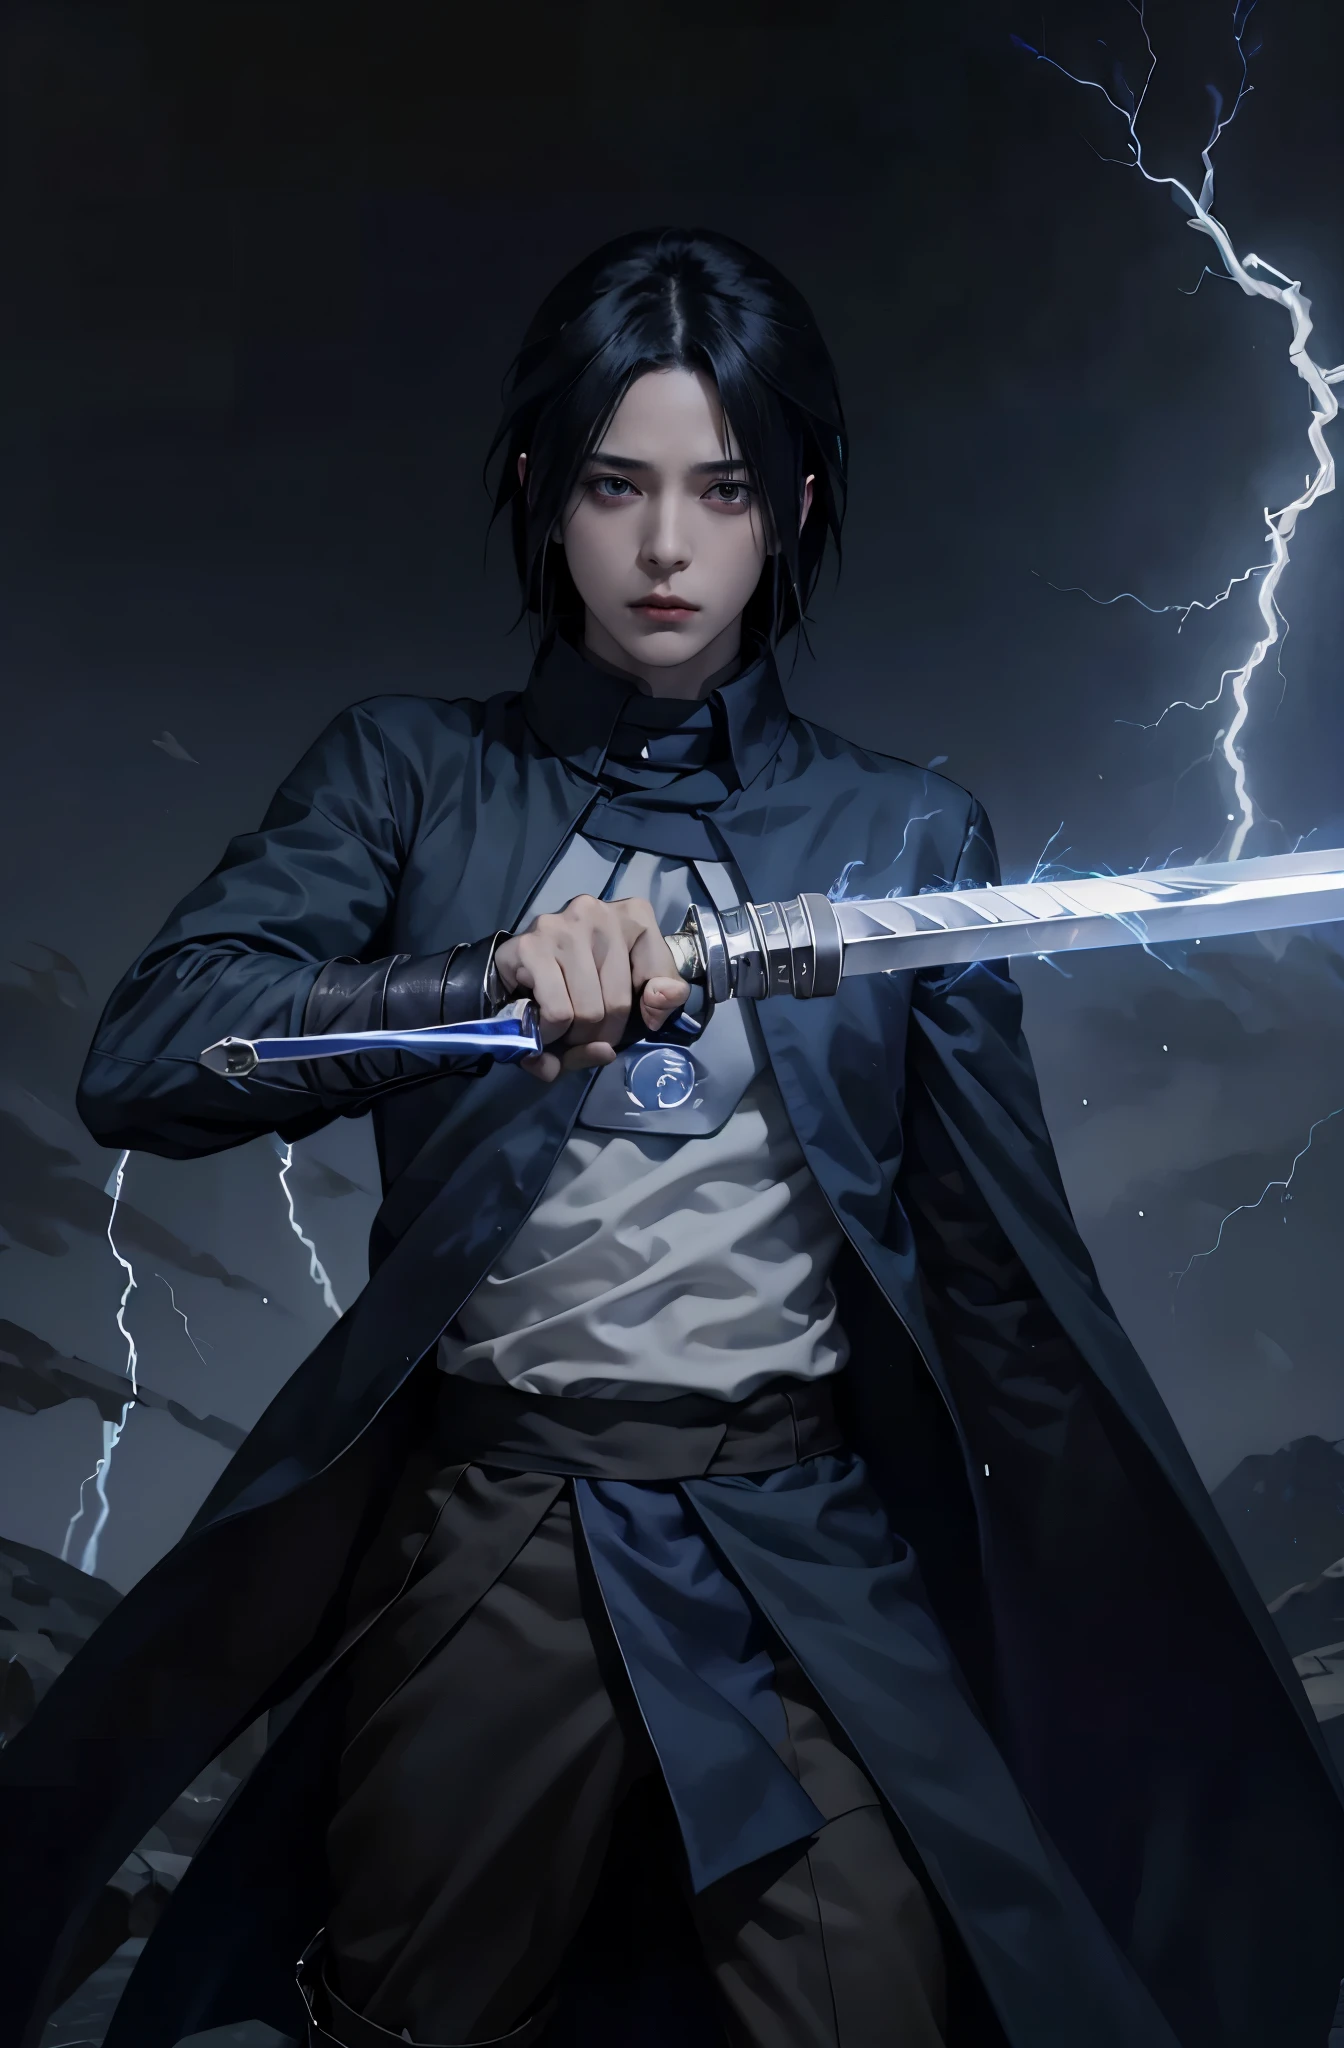 ชาย 1 คน, ซาสึเกะอุจิวะถือดาบให้กับผู้ชม, เต็มตัว, สายฟ้าสีฟ้า VFX in the sword, สายฟ้าสีฟ้า , glowing สายฟ้าสีฟ้า sword, เสื้อคลุมสีดำ